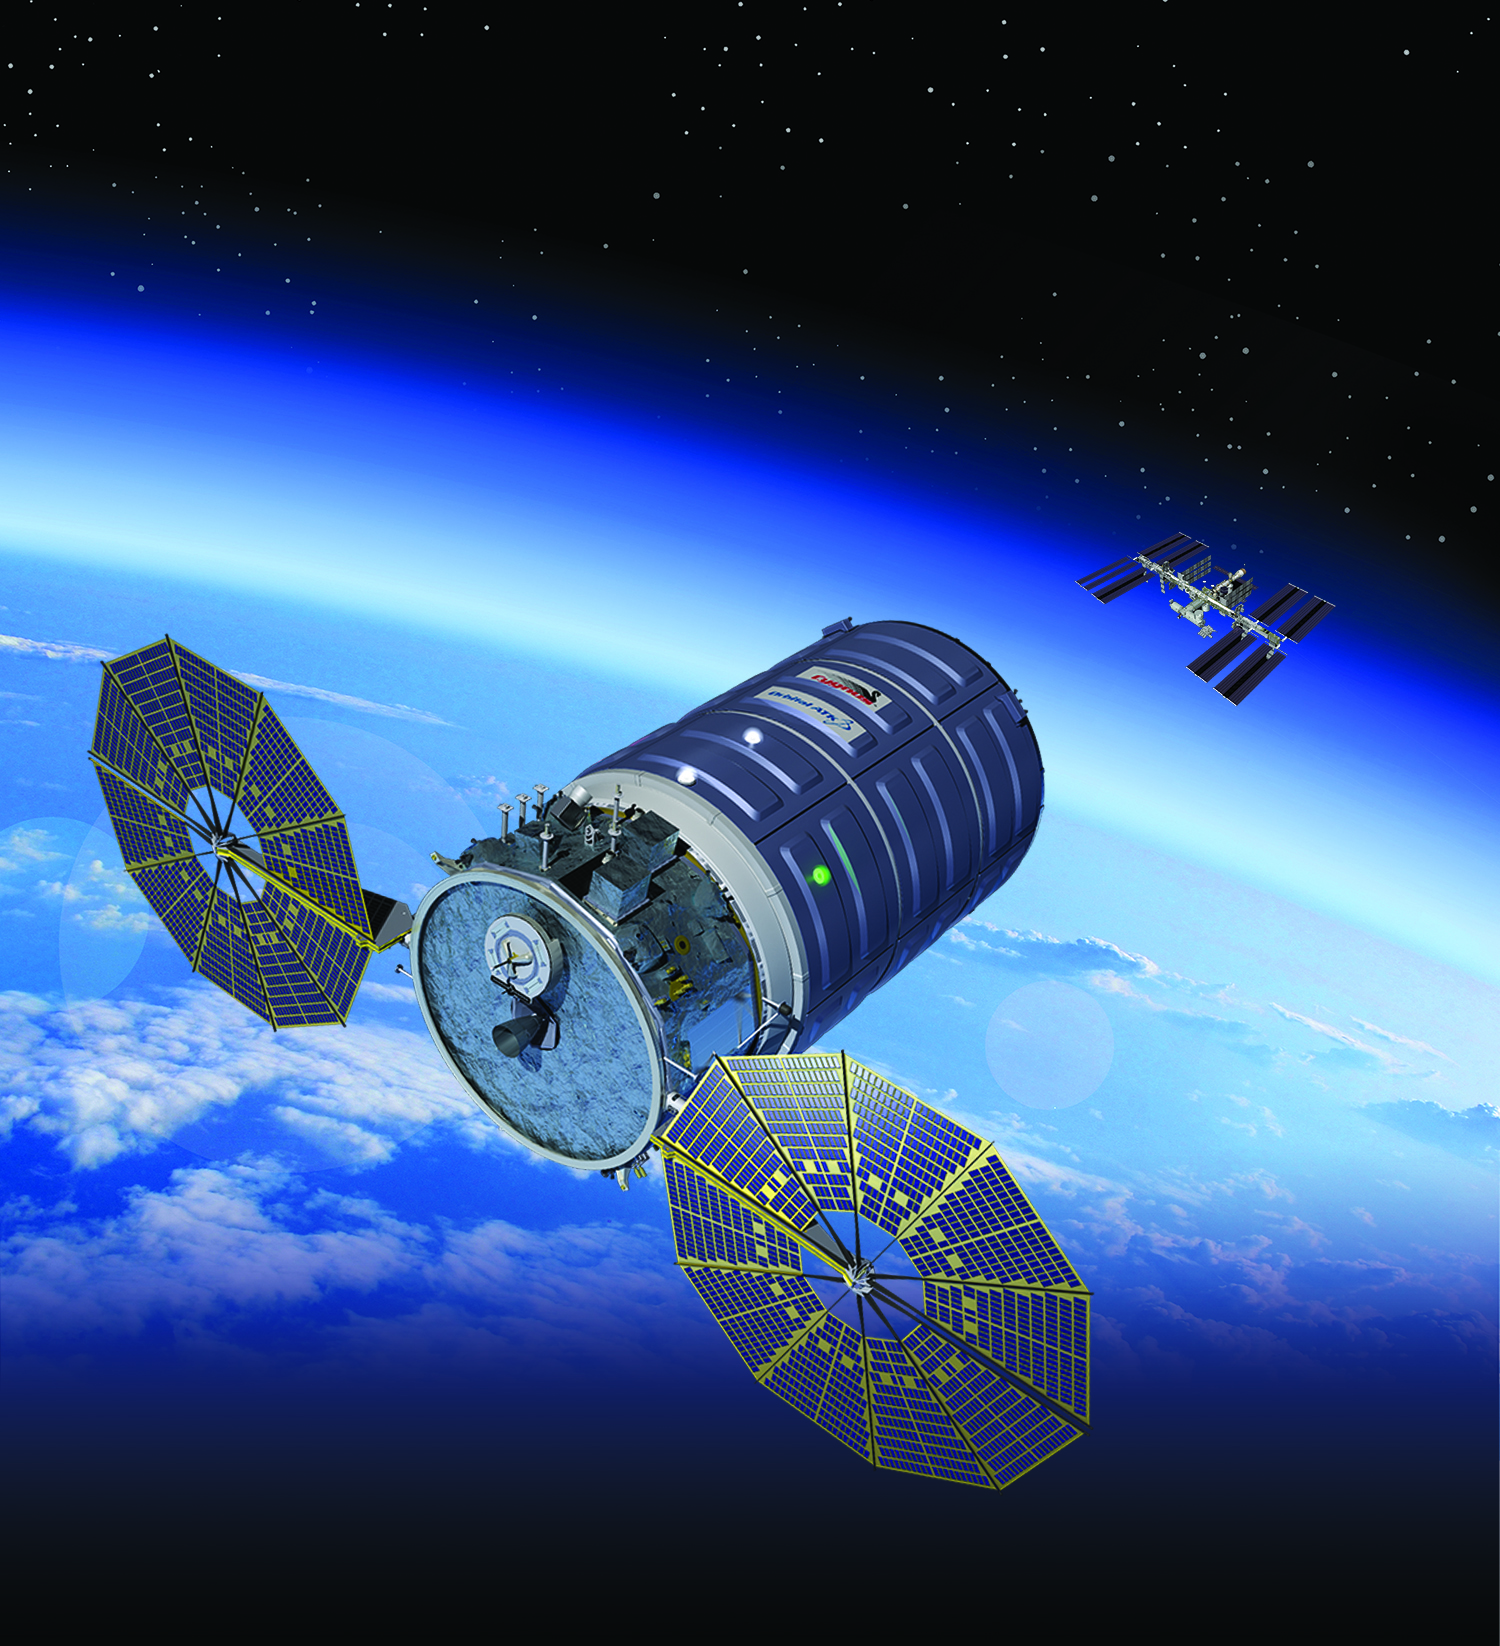 Artist's concept of Orbital ATK's Cygnus spacecraft in orbit.